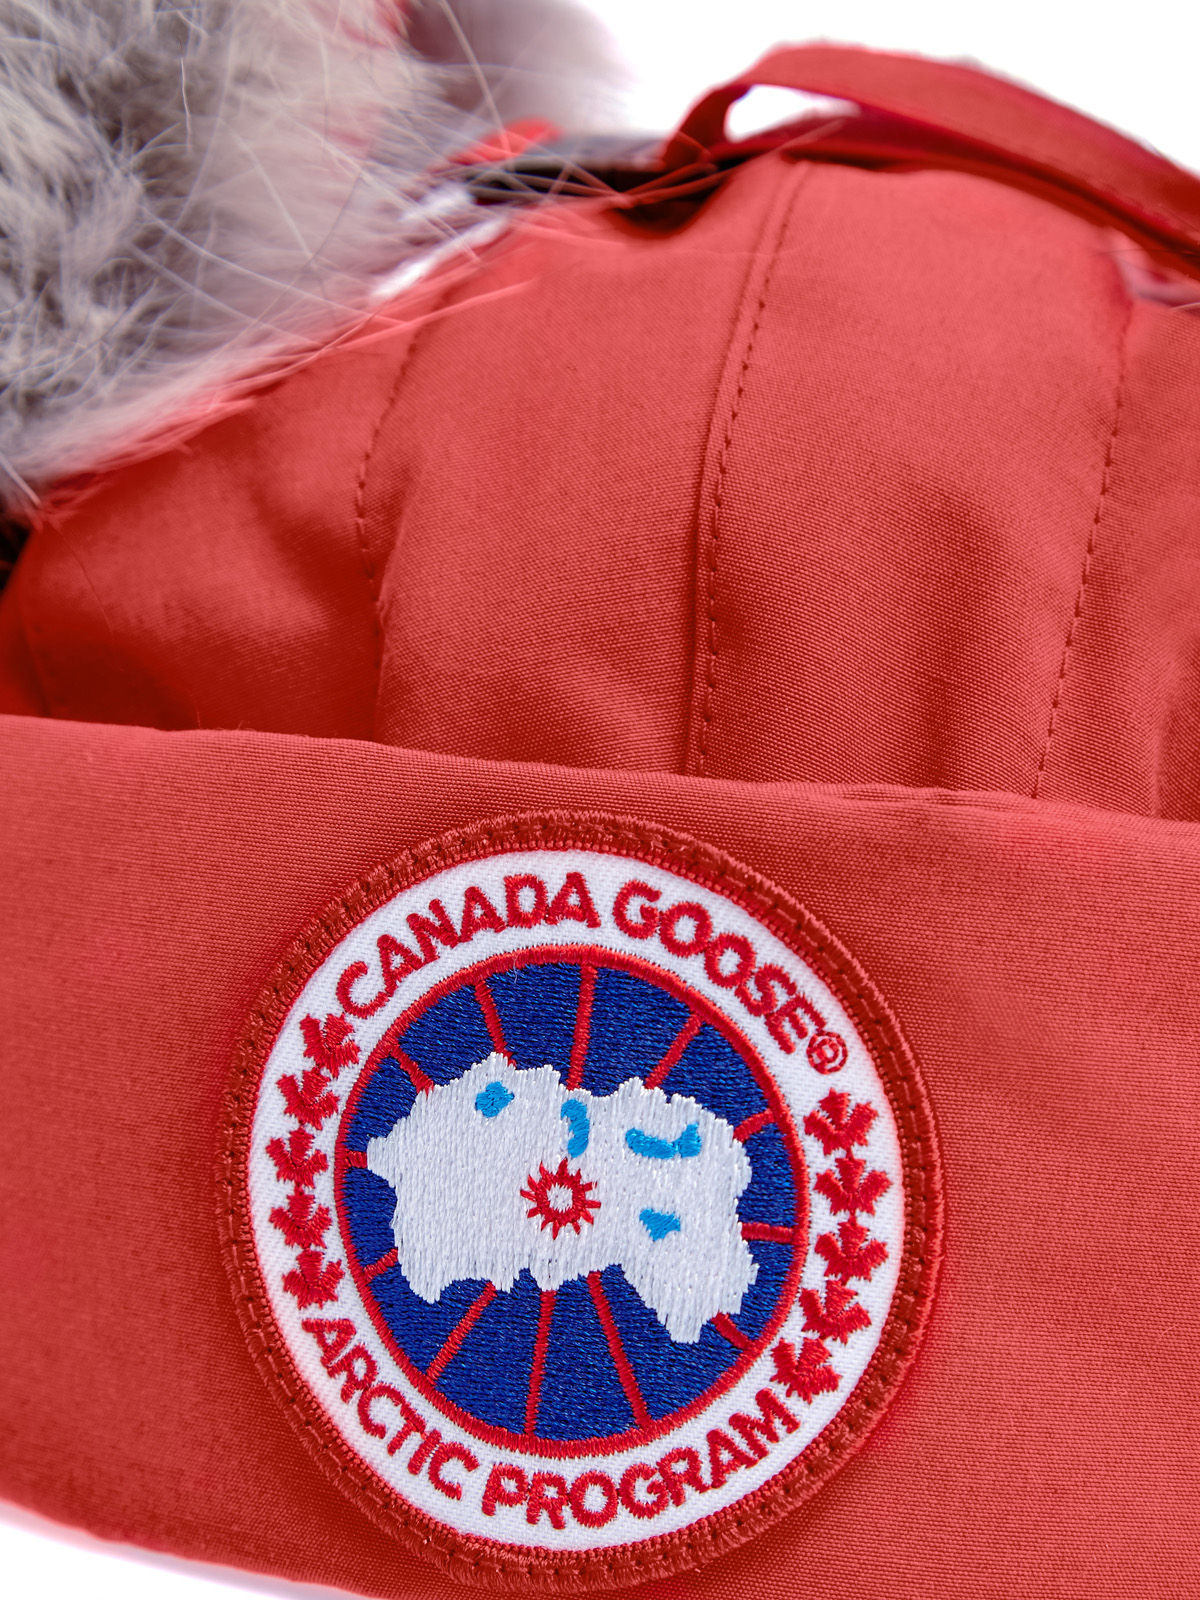 Шапка-трансформер с утеплителем из пуха и меховой отделкой CANADA GOOSE, цвет красный, размер S;L - фото 4